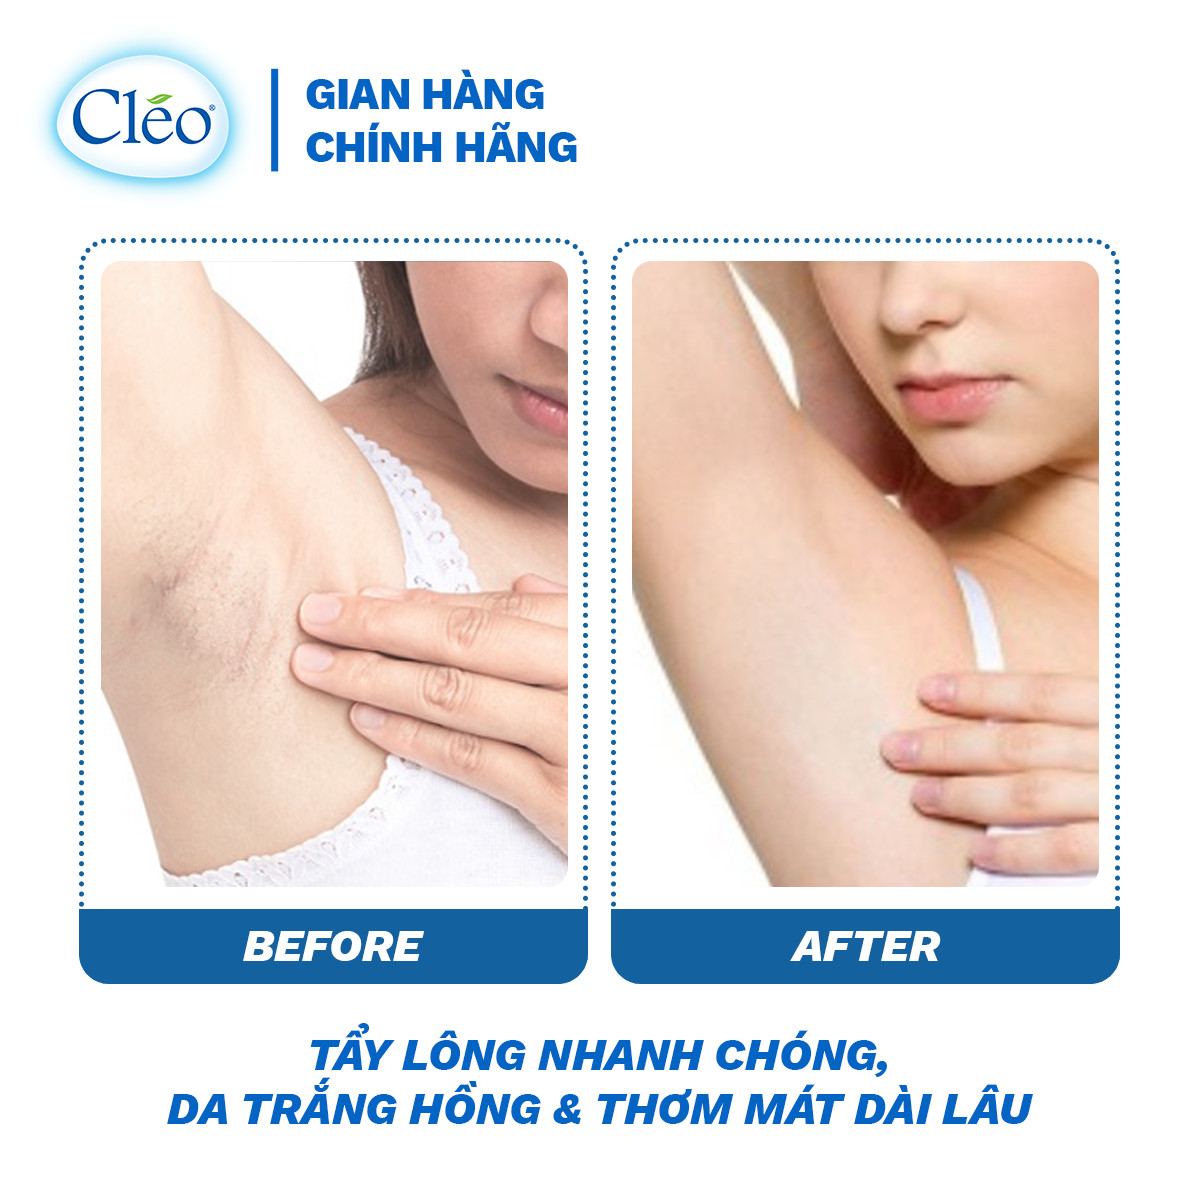 Kem Tẩy Lông Chiết Xuất Bơ Cleo Dành Cho Da Nhạy Cảm 50g, an toàn, không đau và đạt hiệu quả nhanh chóng